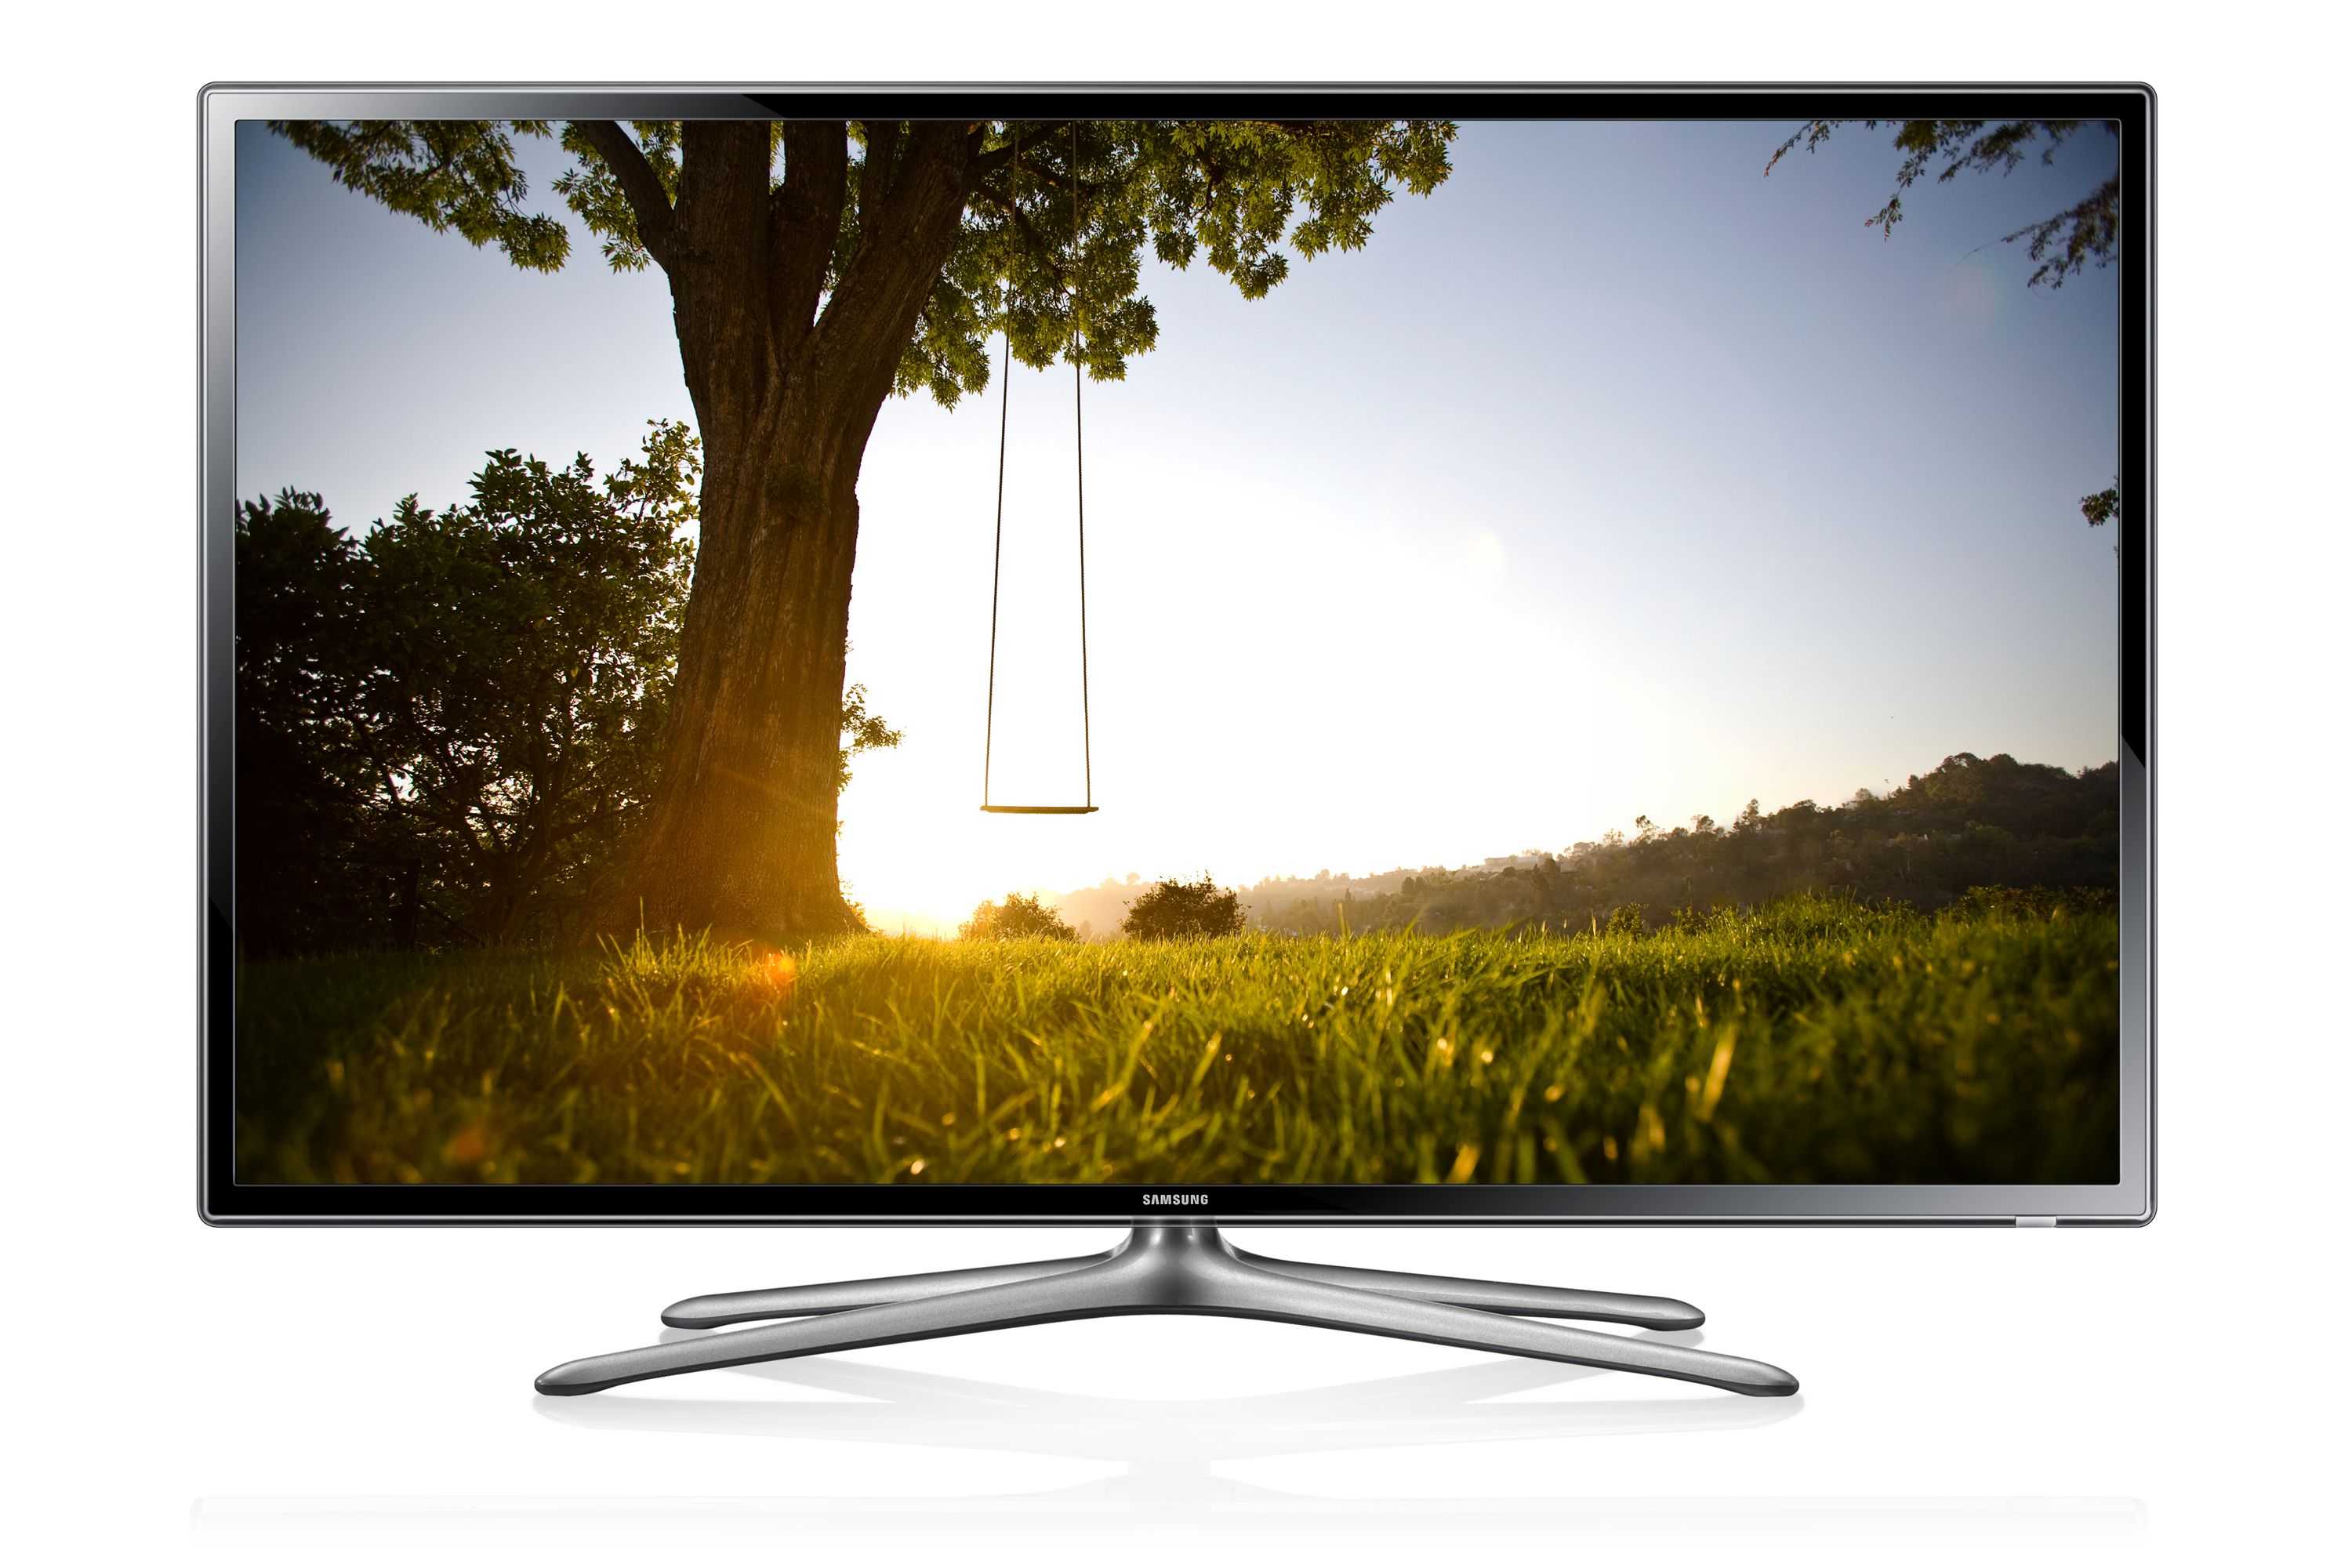 Телевизор Samsung UE50F6800 - подробные характеристики обзоры видео фото Цены в интернет-магазинах где можно купить телевизор Samsung UE50F6800